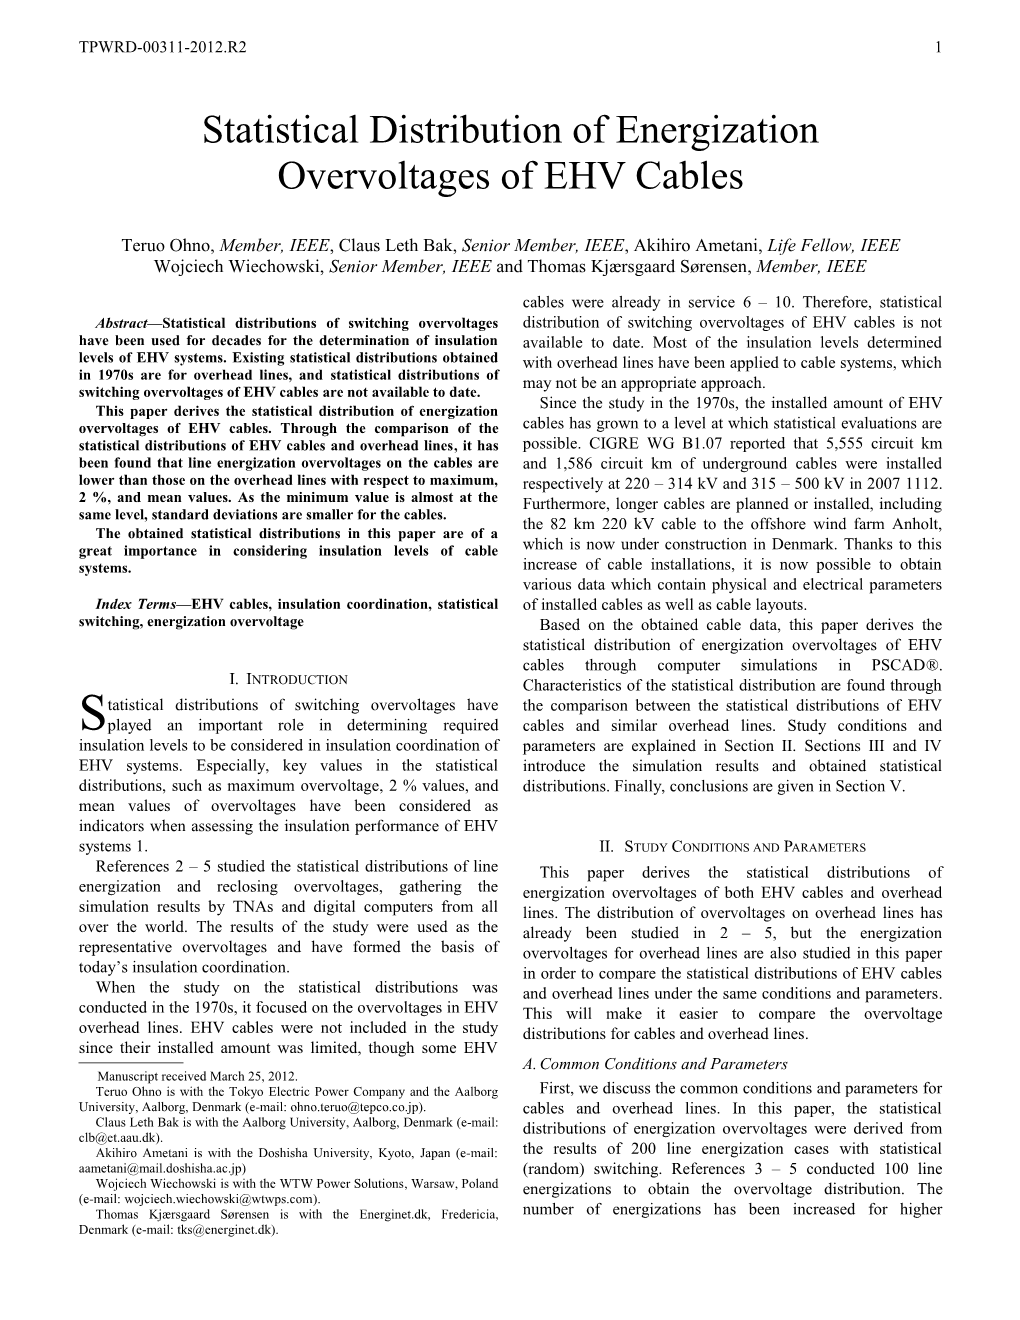 Statistical Distribution of Energization Overvoltages of EHV Cables